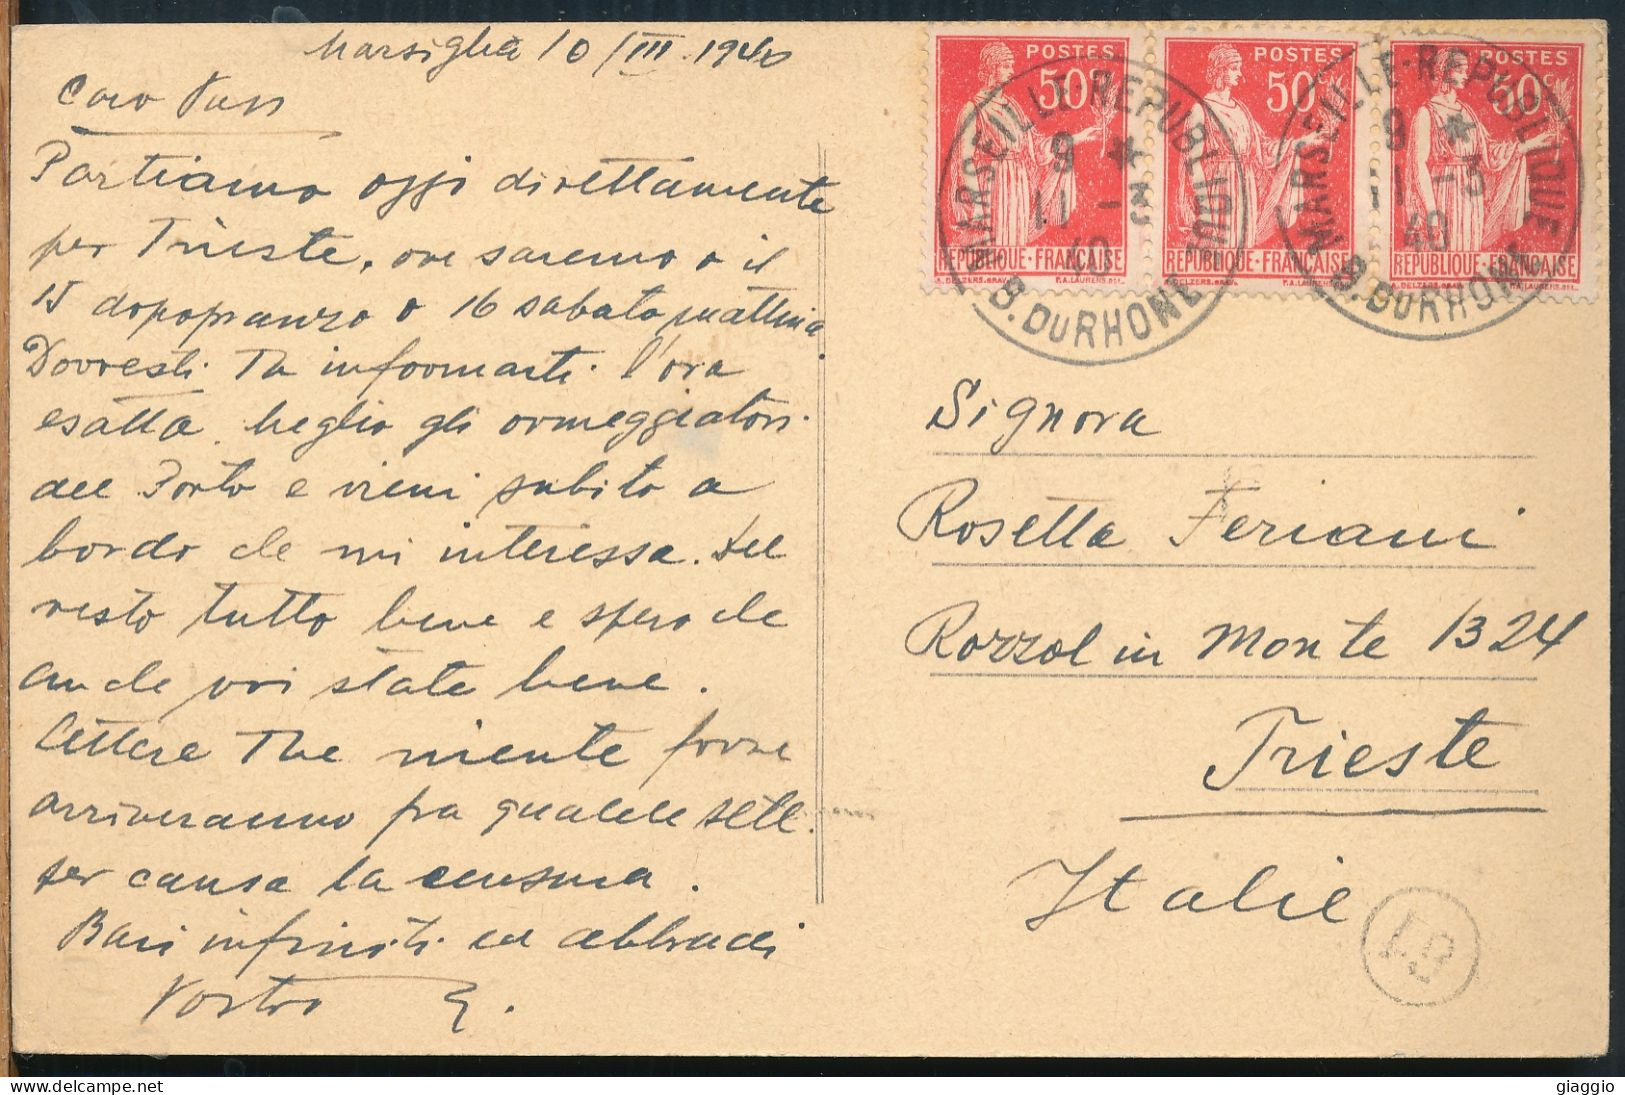 °°° 30929 - FRANCE - 13 - MARSEILLE - LA FONTAINE CANTINI - 1940 With Stamps °°° - Canebière, Centro Città